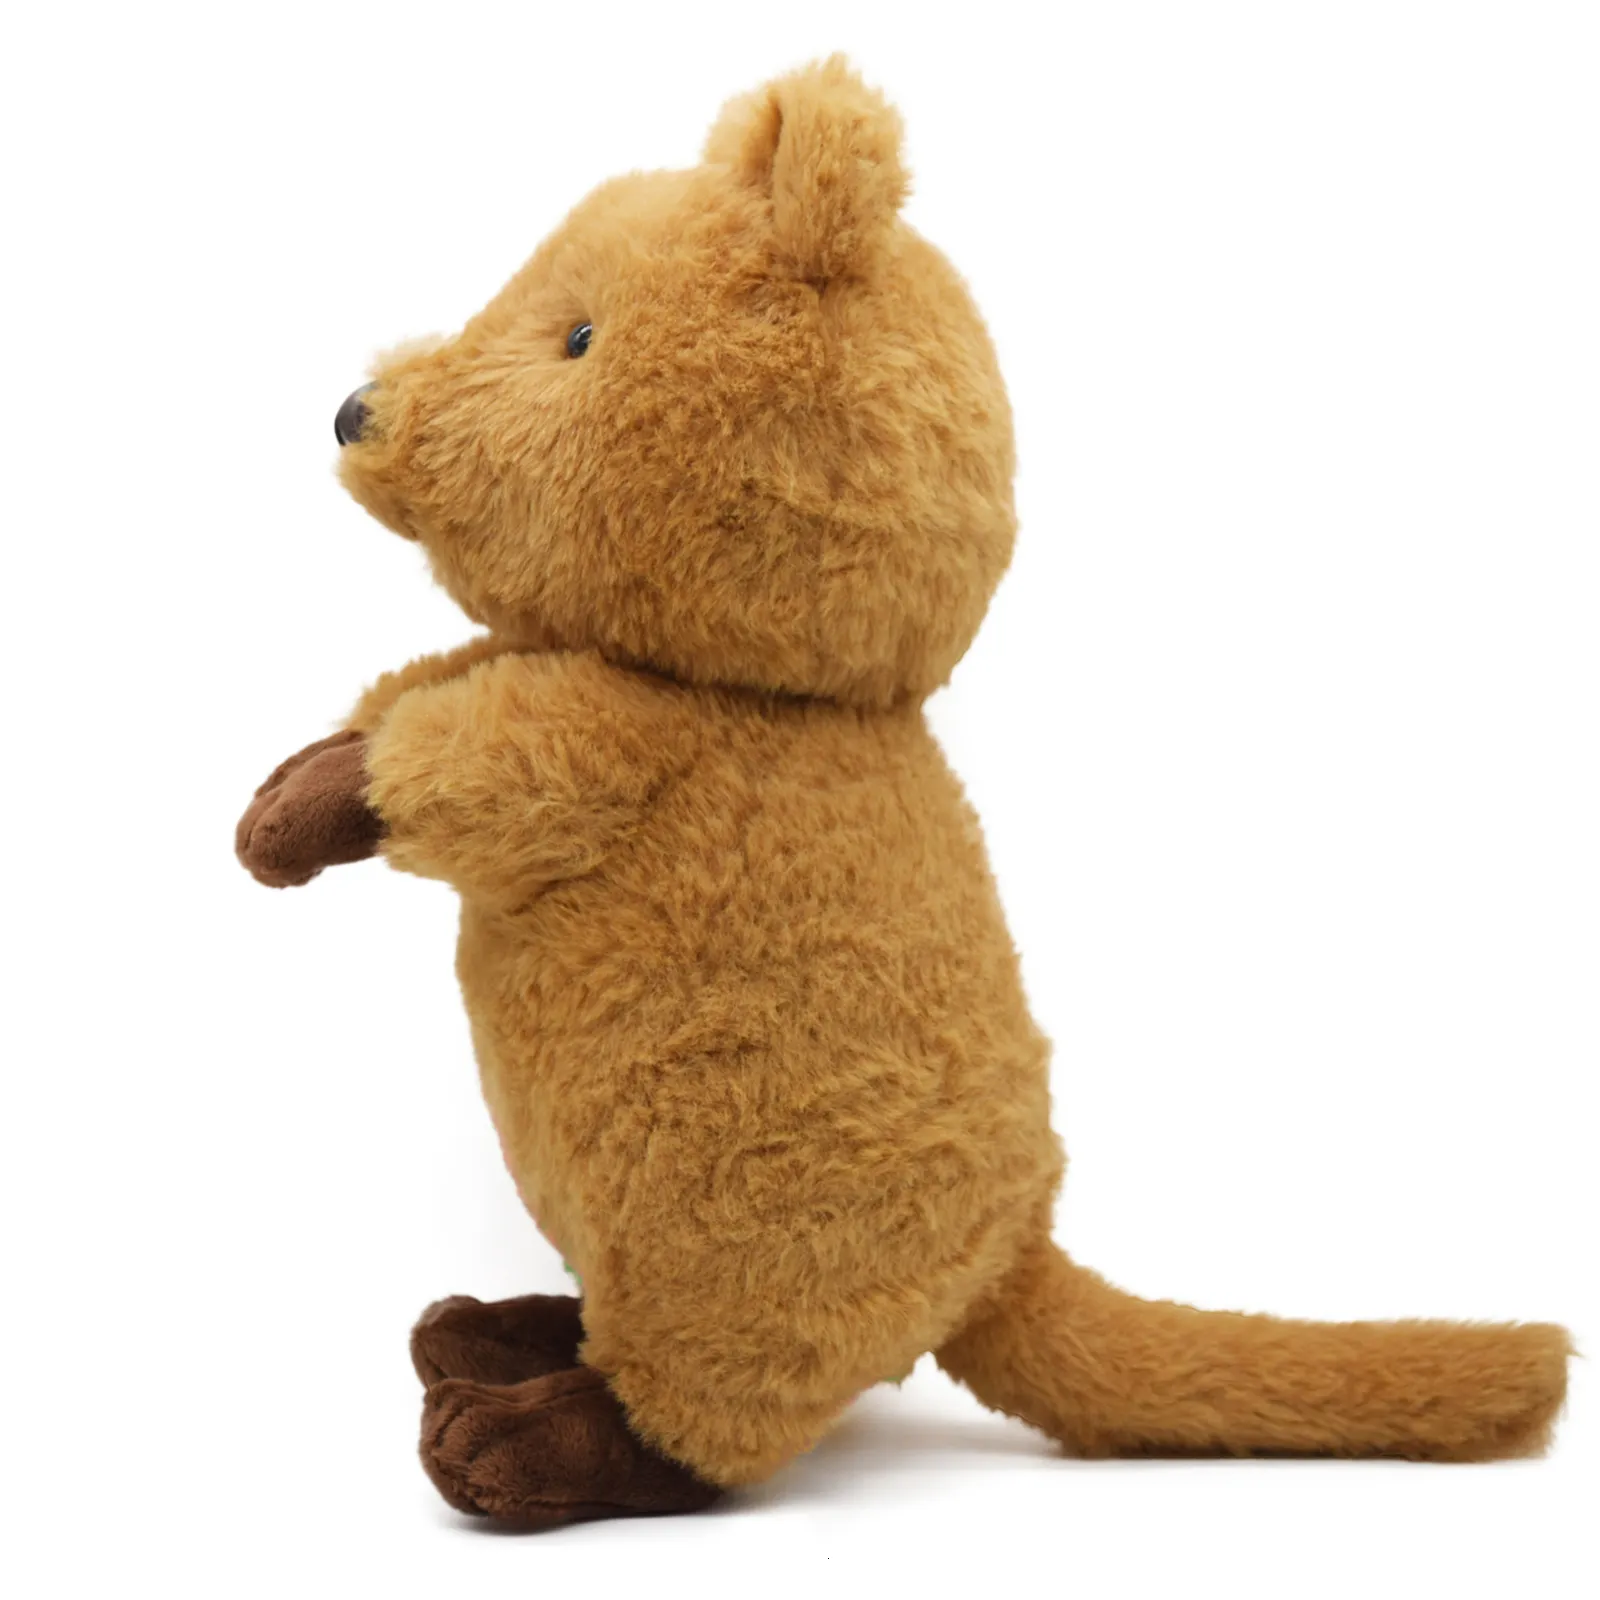 Obtenez le jouet Quokka Soft Animal - ici chez His Gifts!